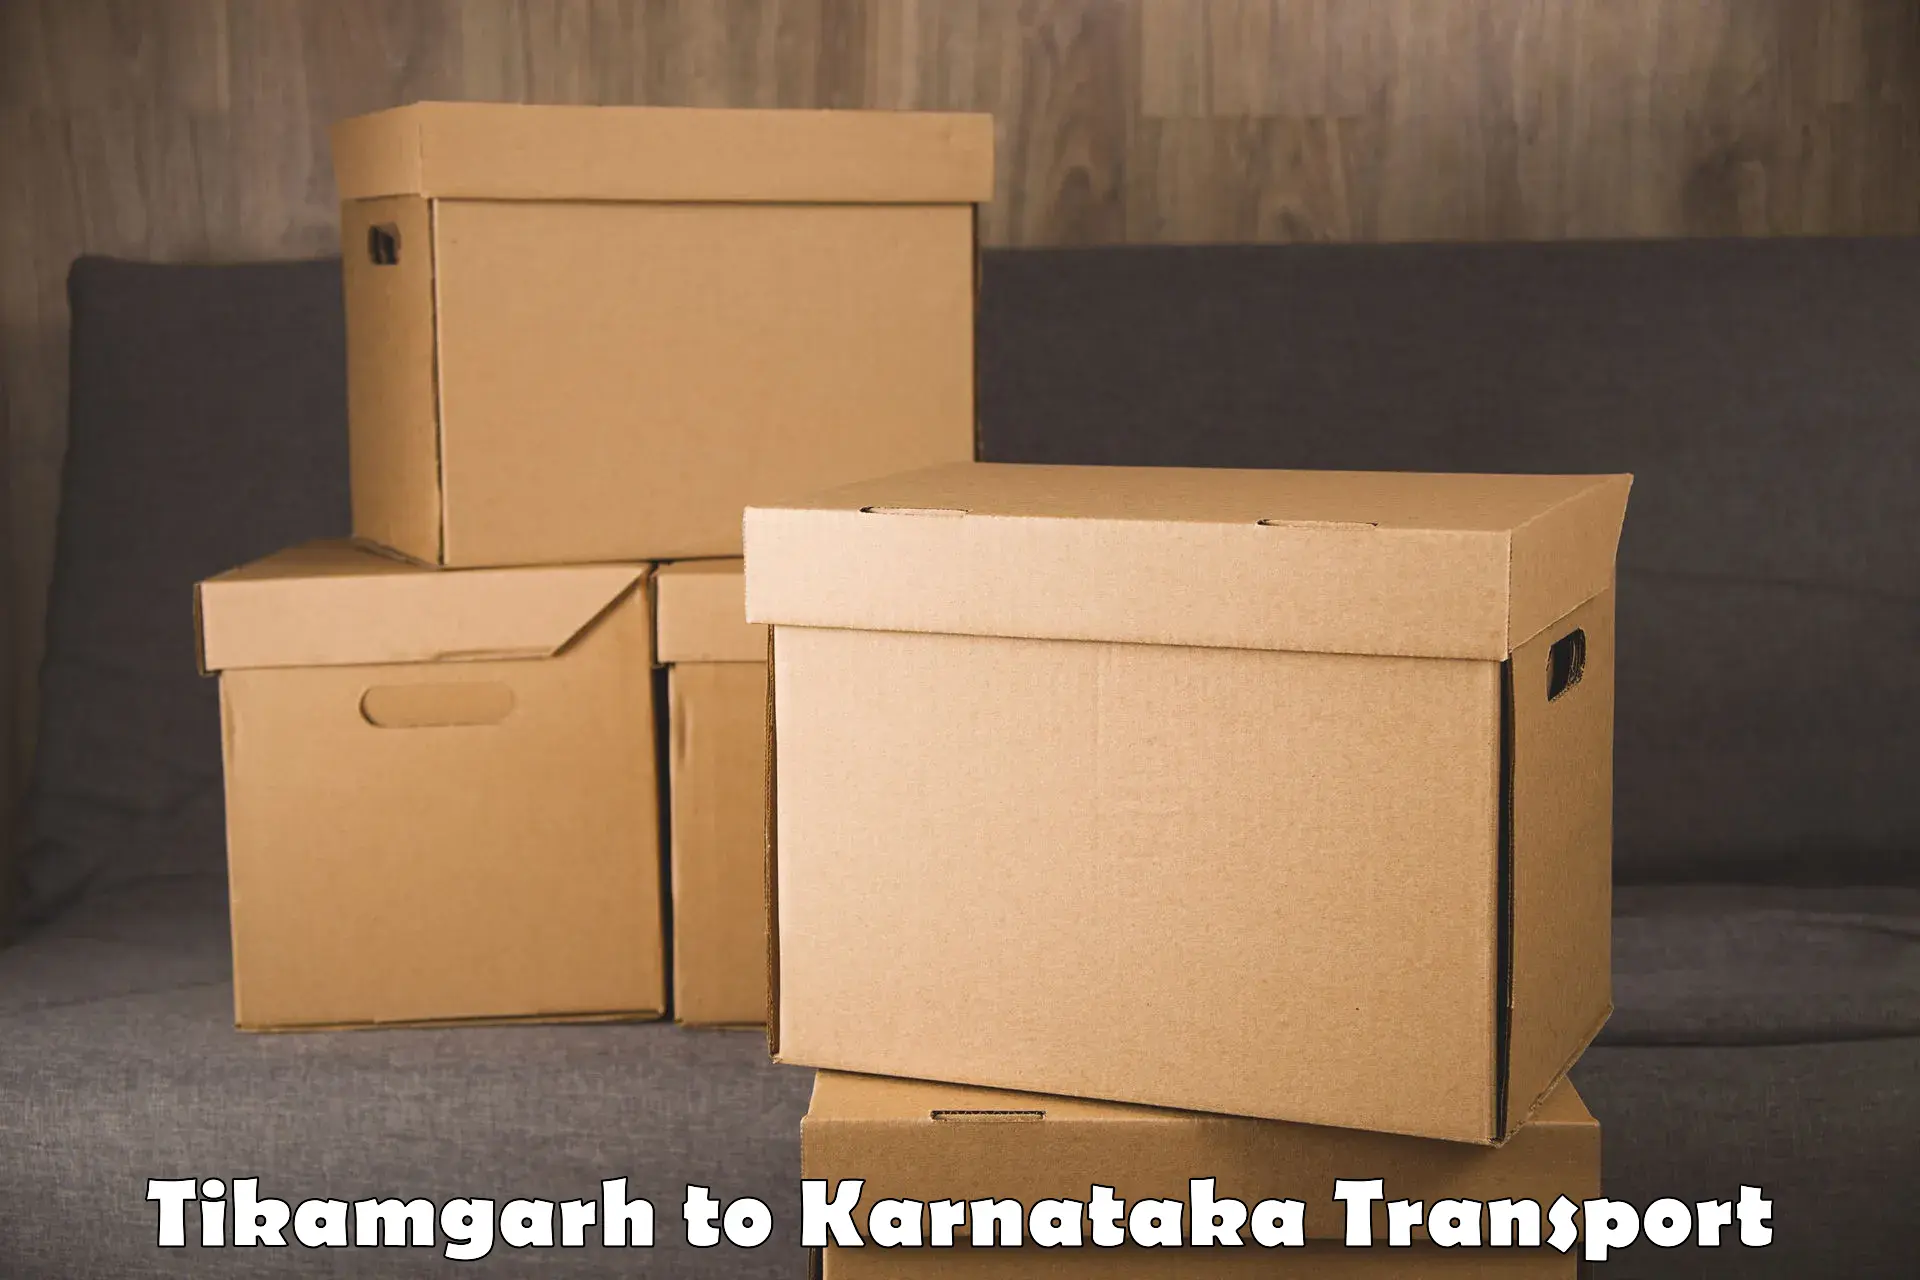 Truck transport companies in India Tikamgarh to Harohalli